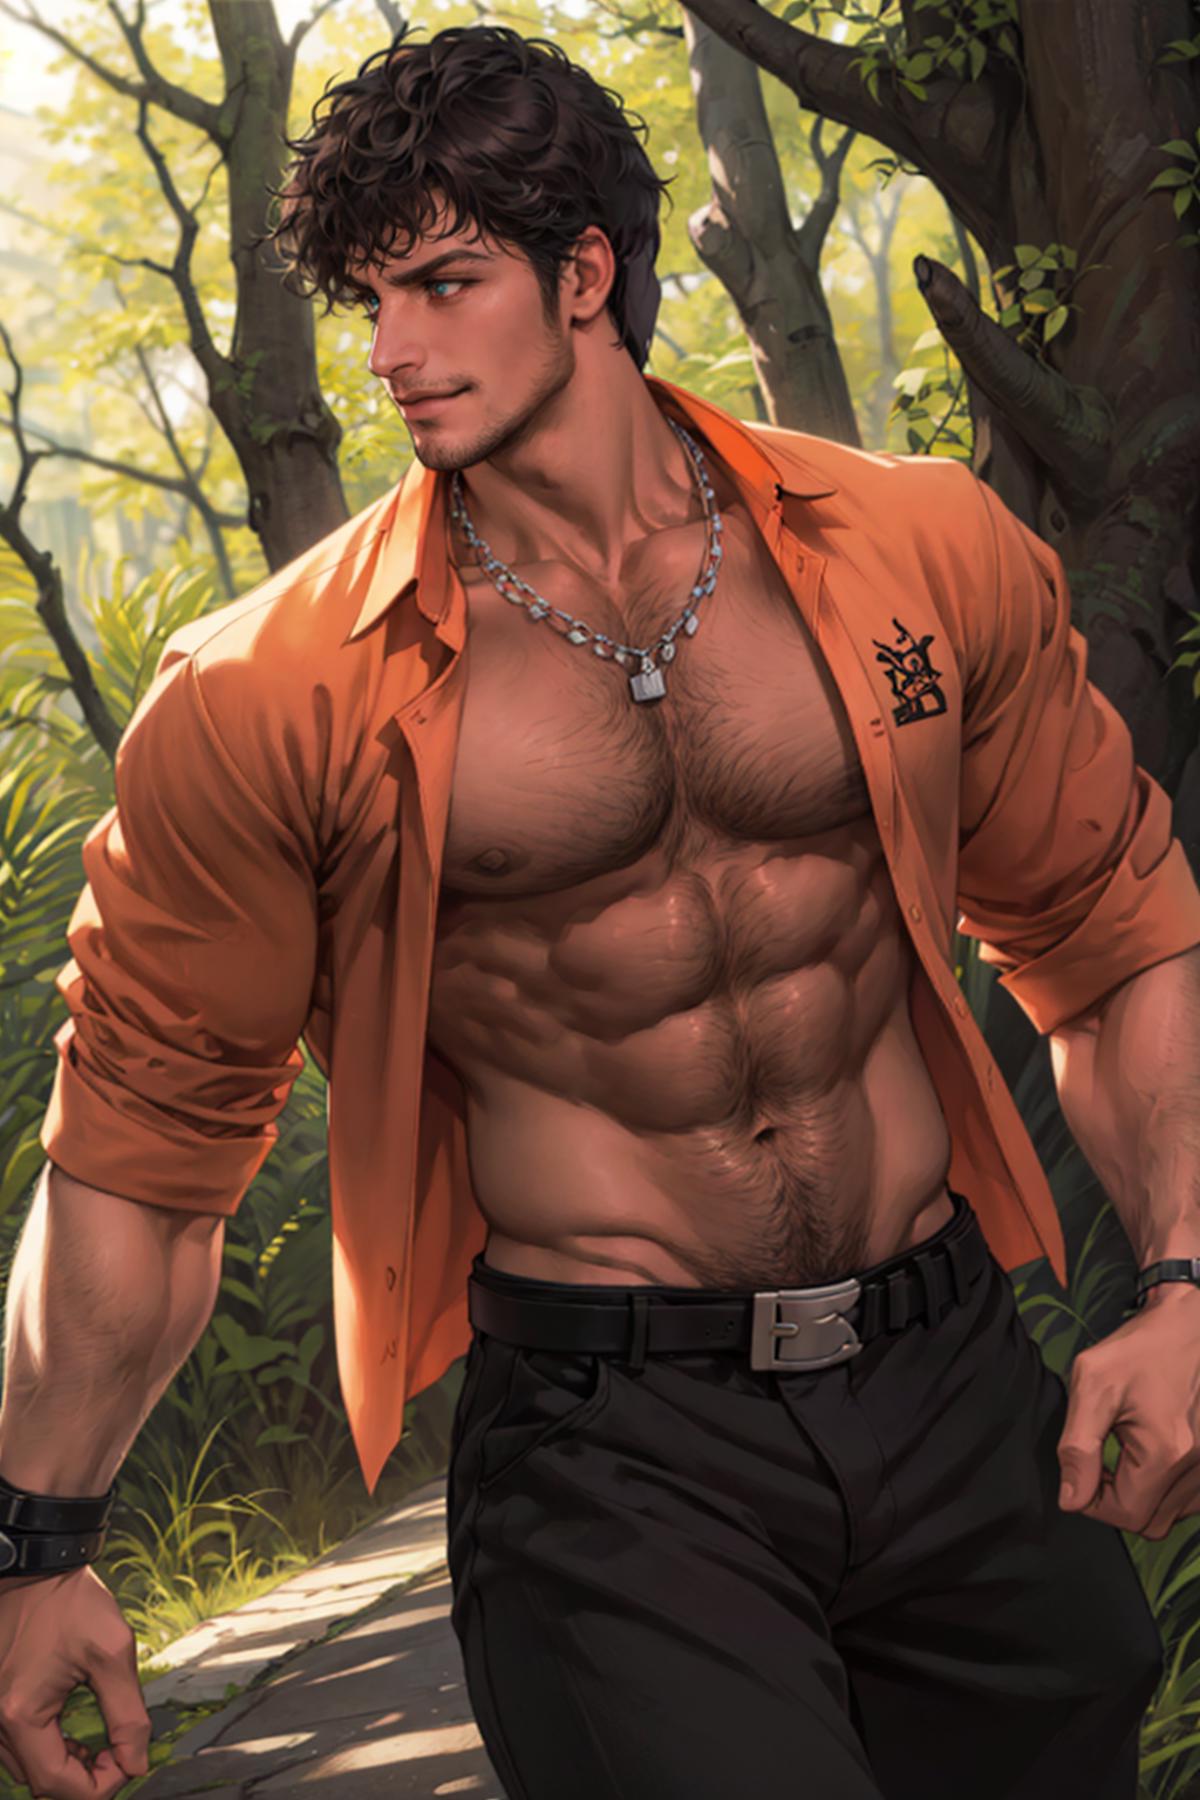 Miguel Caballero [Tekken] image by DoctorStasis